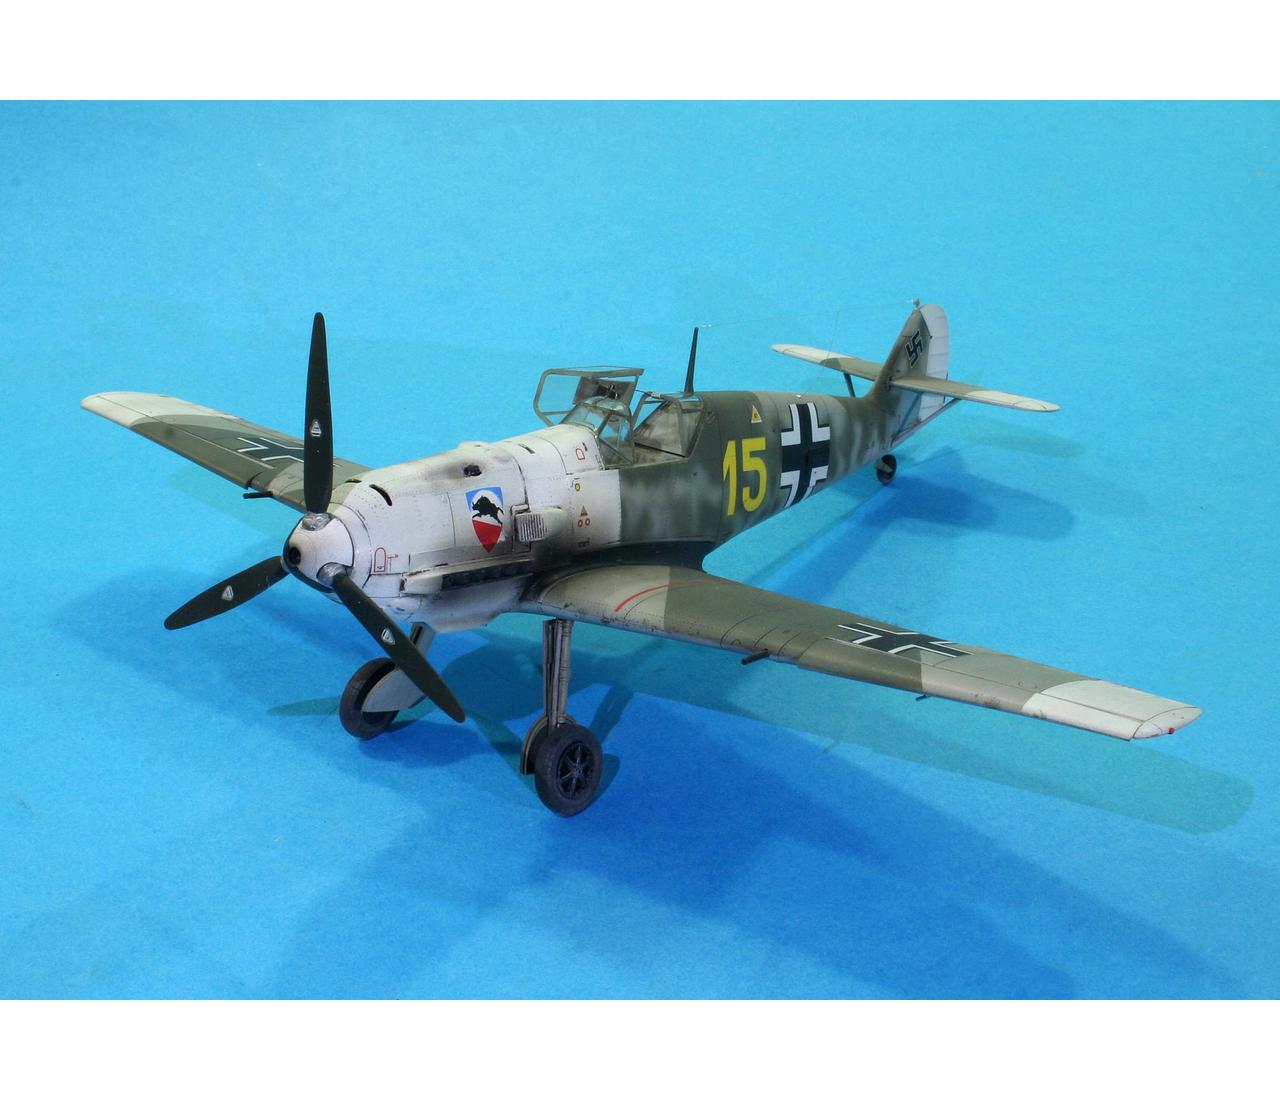 3908262 Eduard Plastic Kits Bf 109E-3 Profipack in 1:48 